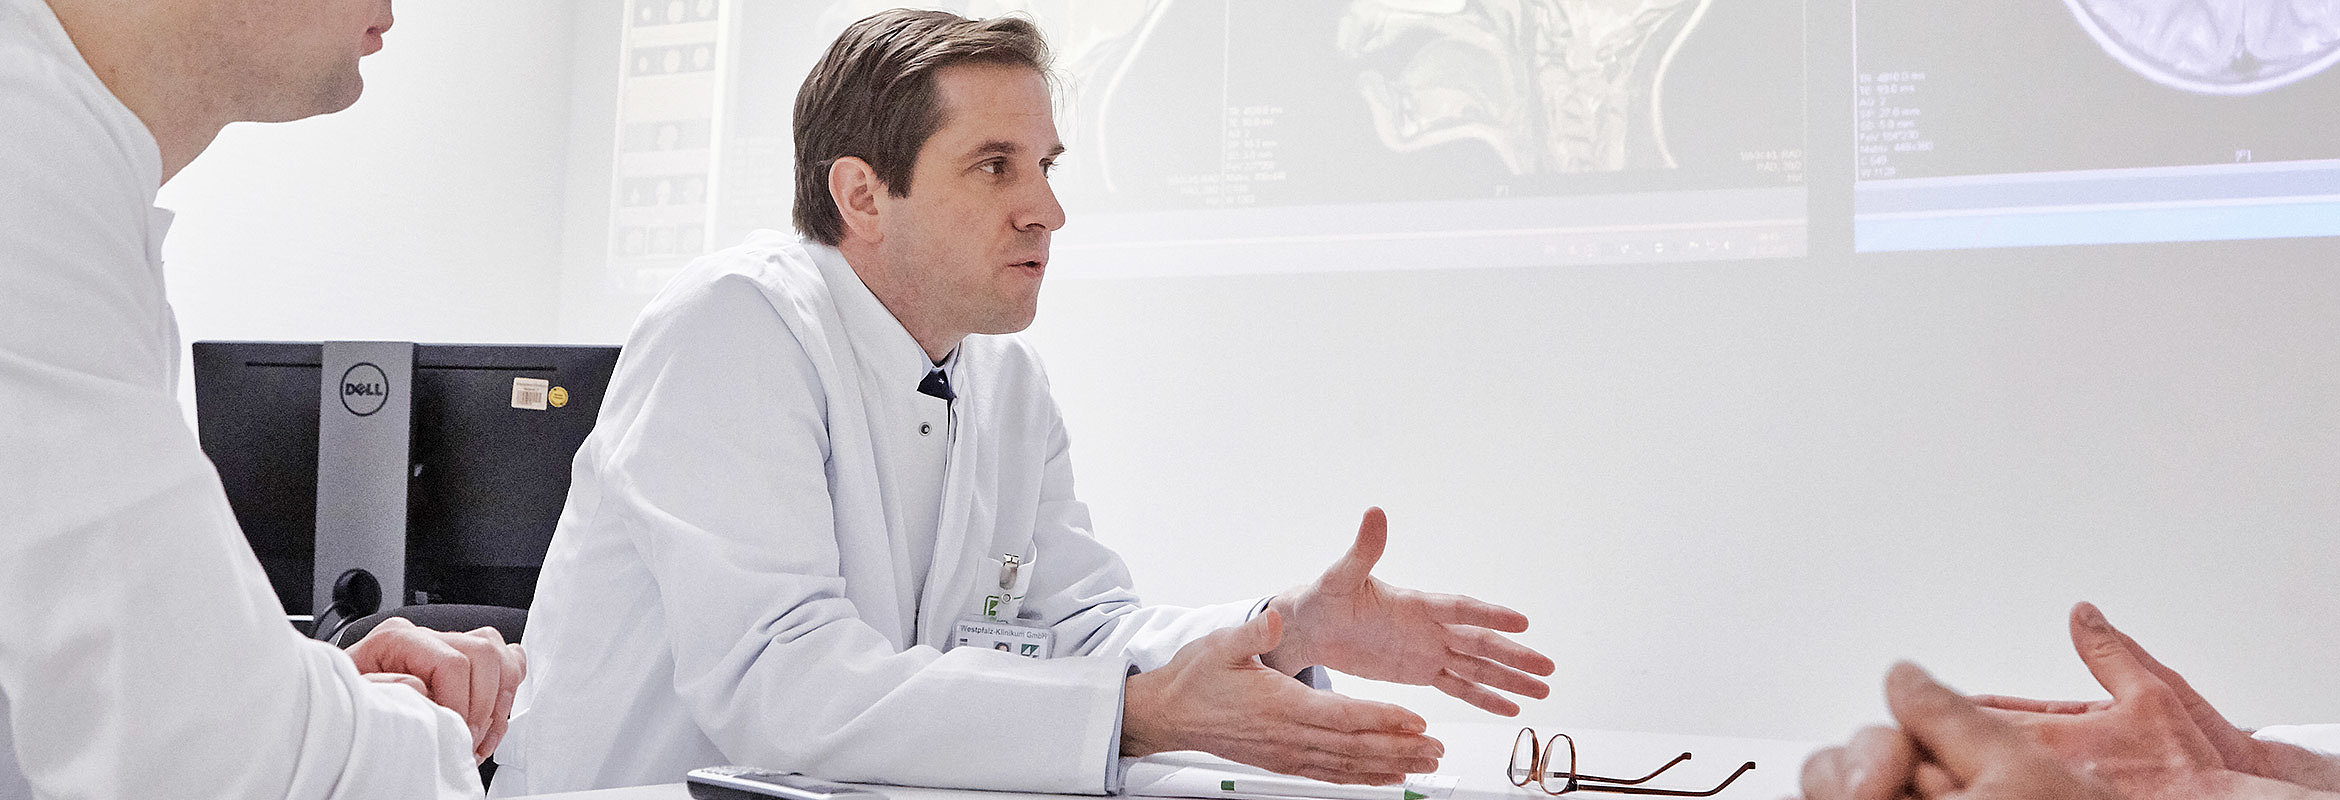 Priv.-Doz. Dr. med. Kajetan von Eckardstein, Chefarzt der Klinik für Neurochirurgie in Kaiserslautern, in einer Besprechung